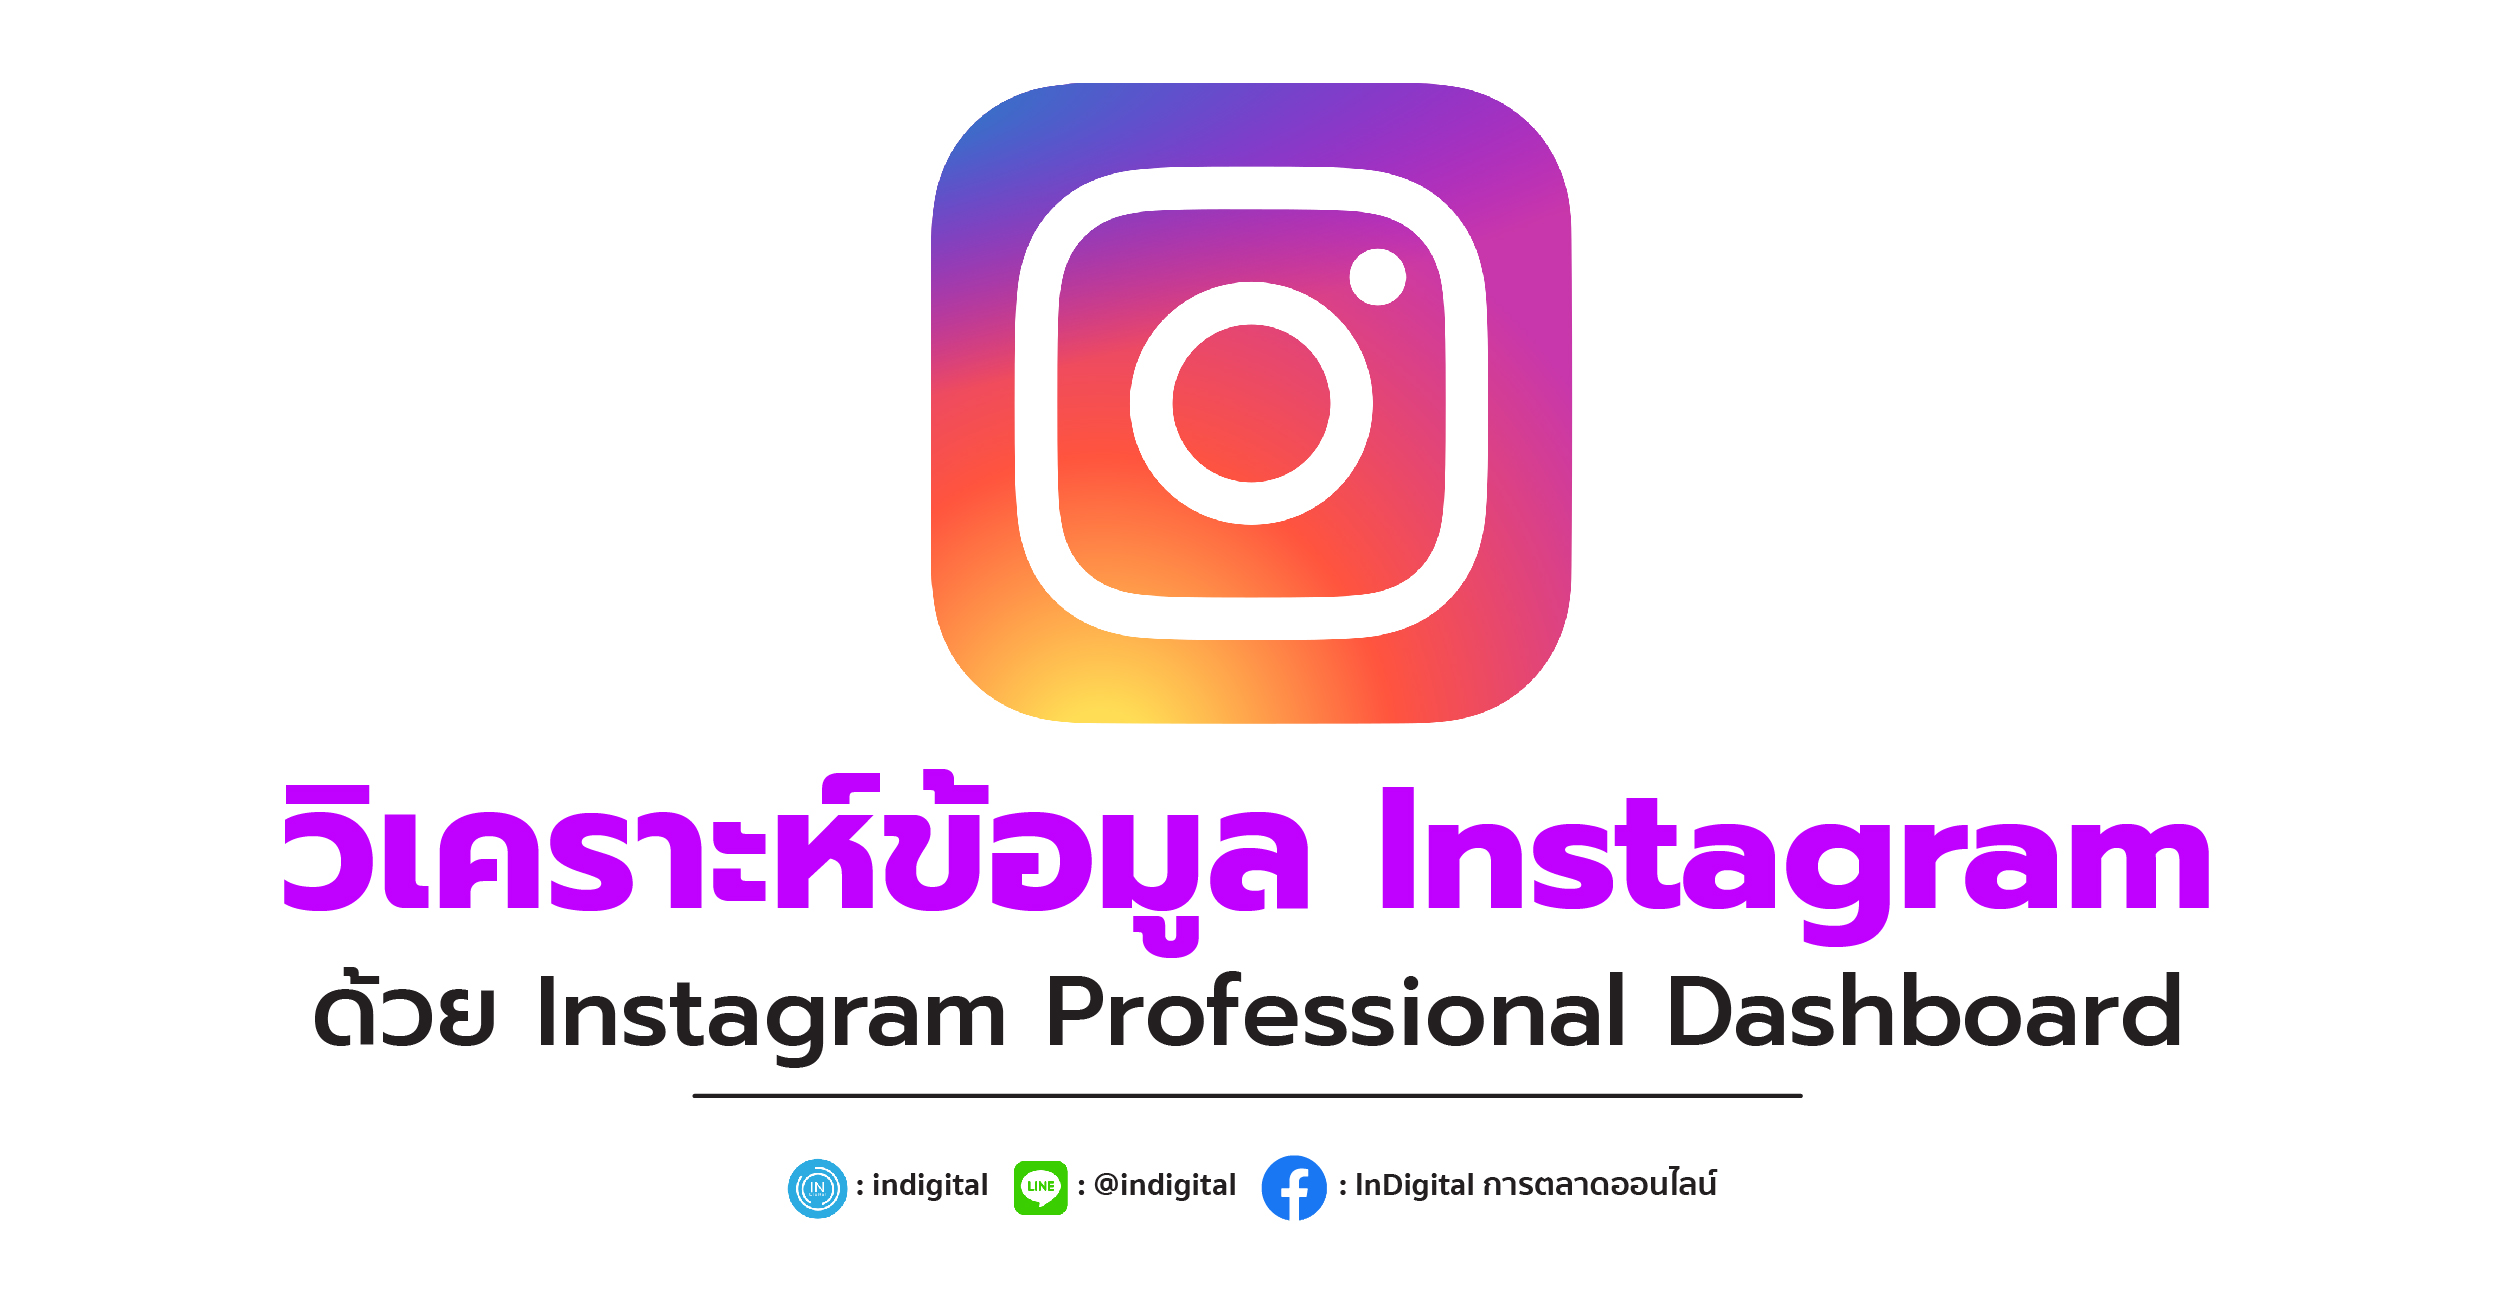 วิเคราะห์ข้อมูล Instagram ด้วย Instagram Professional Dashboard